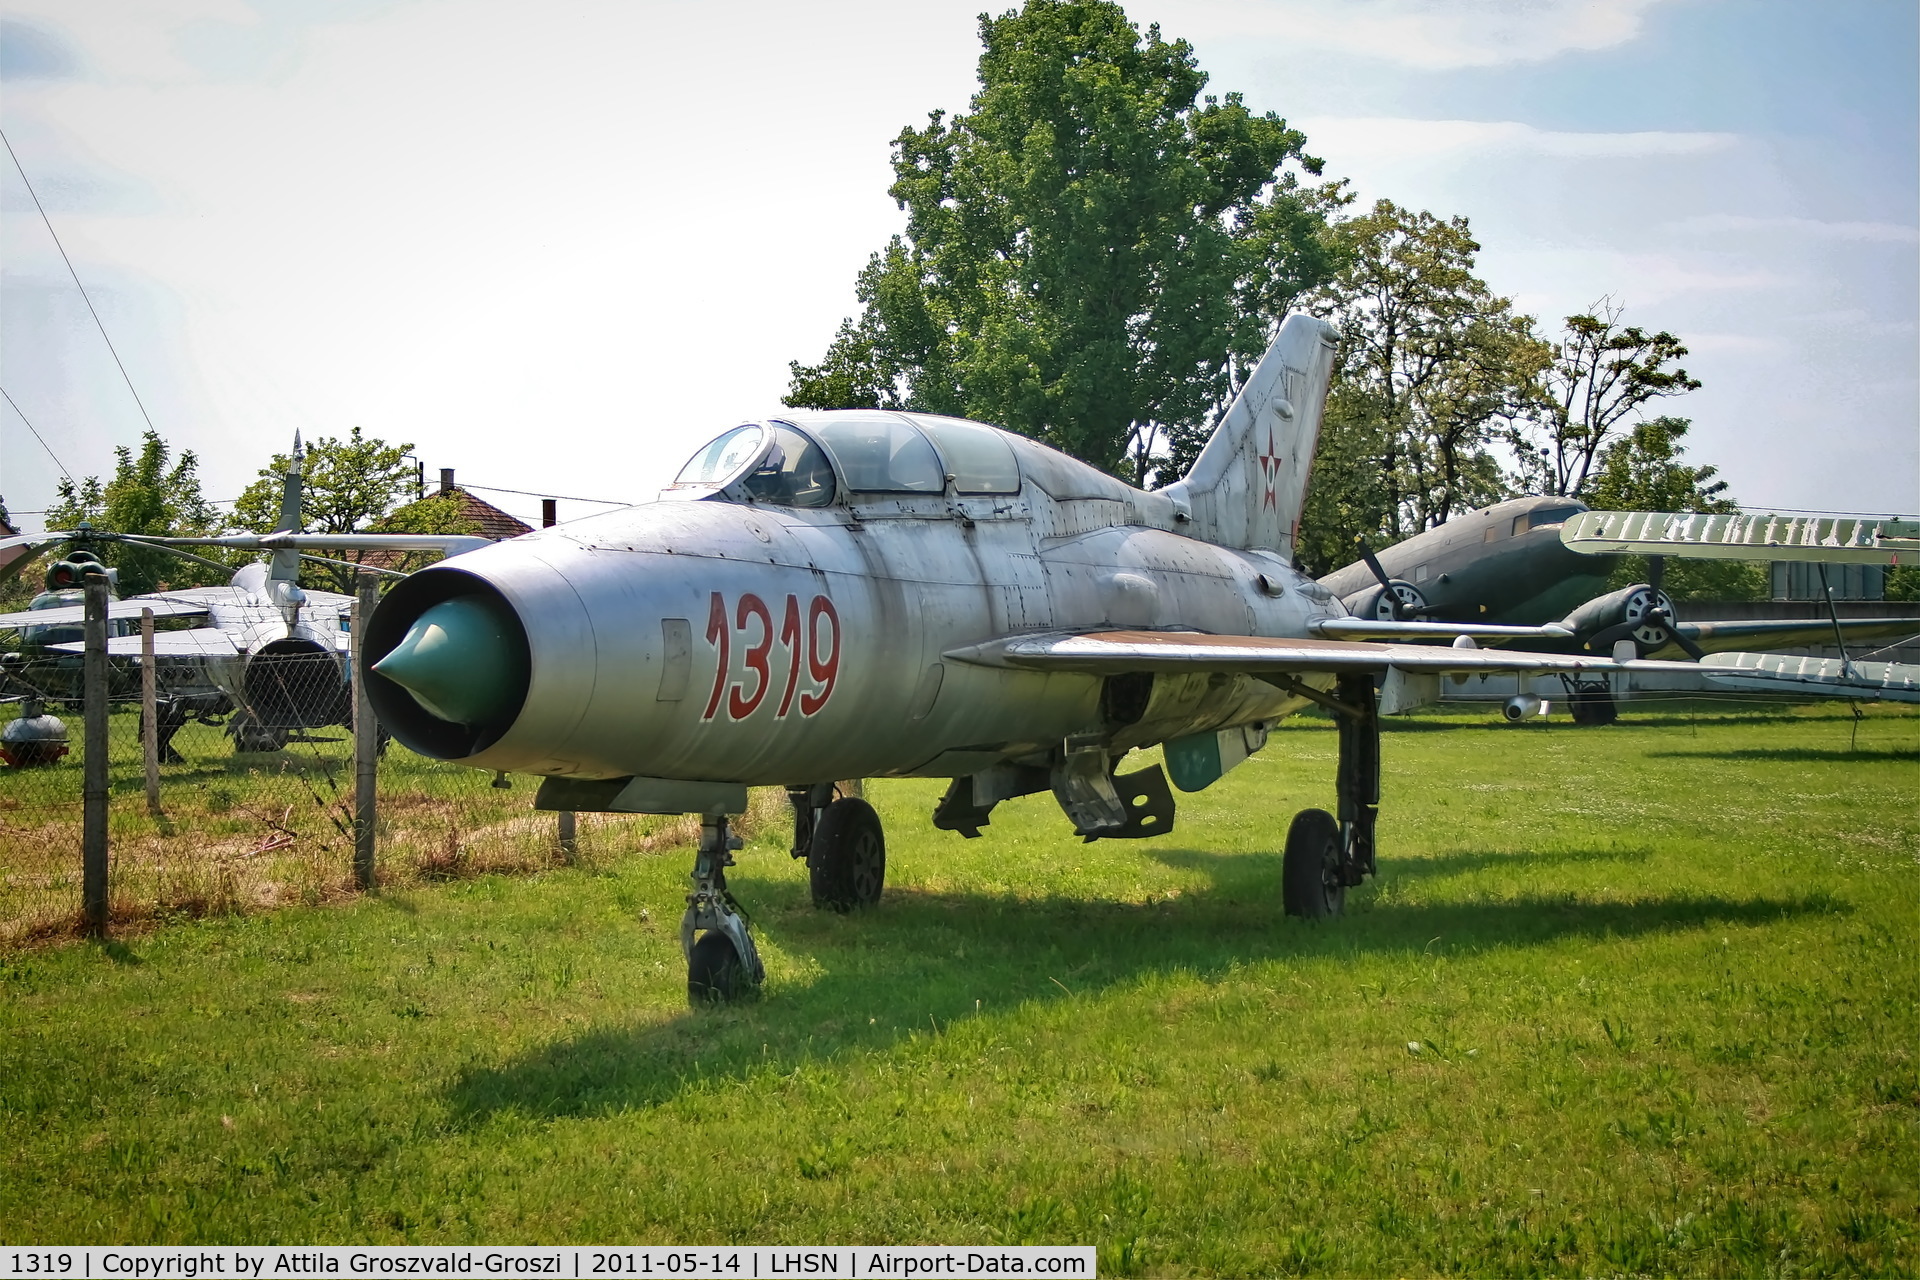 1319, 1965 Mikoyan-Gurevich MiG-21U-400 C/N 661319, LHSN - Szolnok-Szandaszölös Airplane Museum